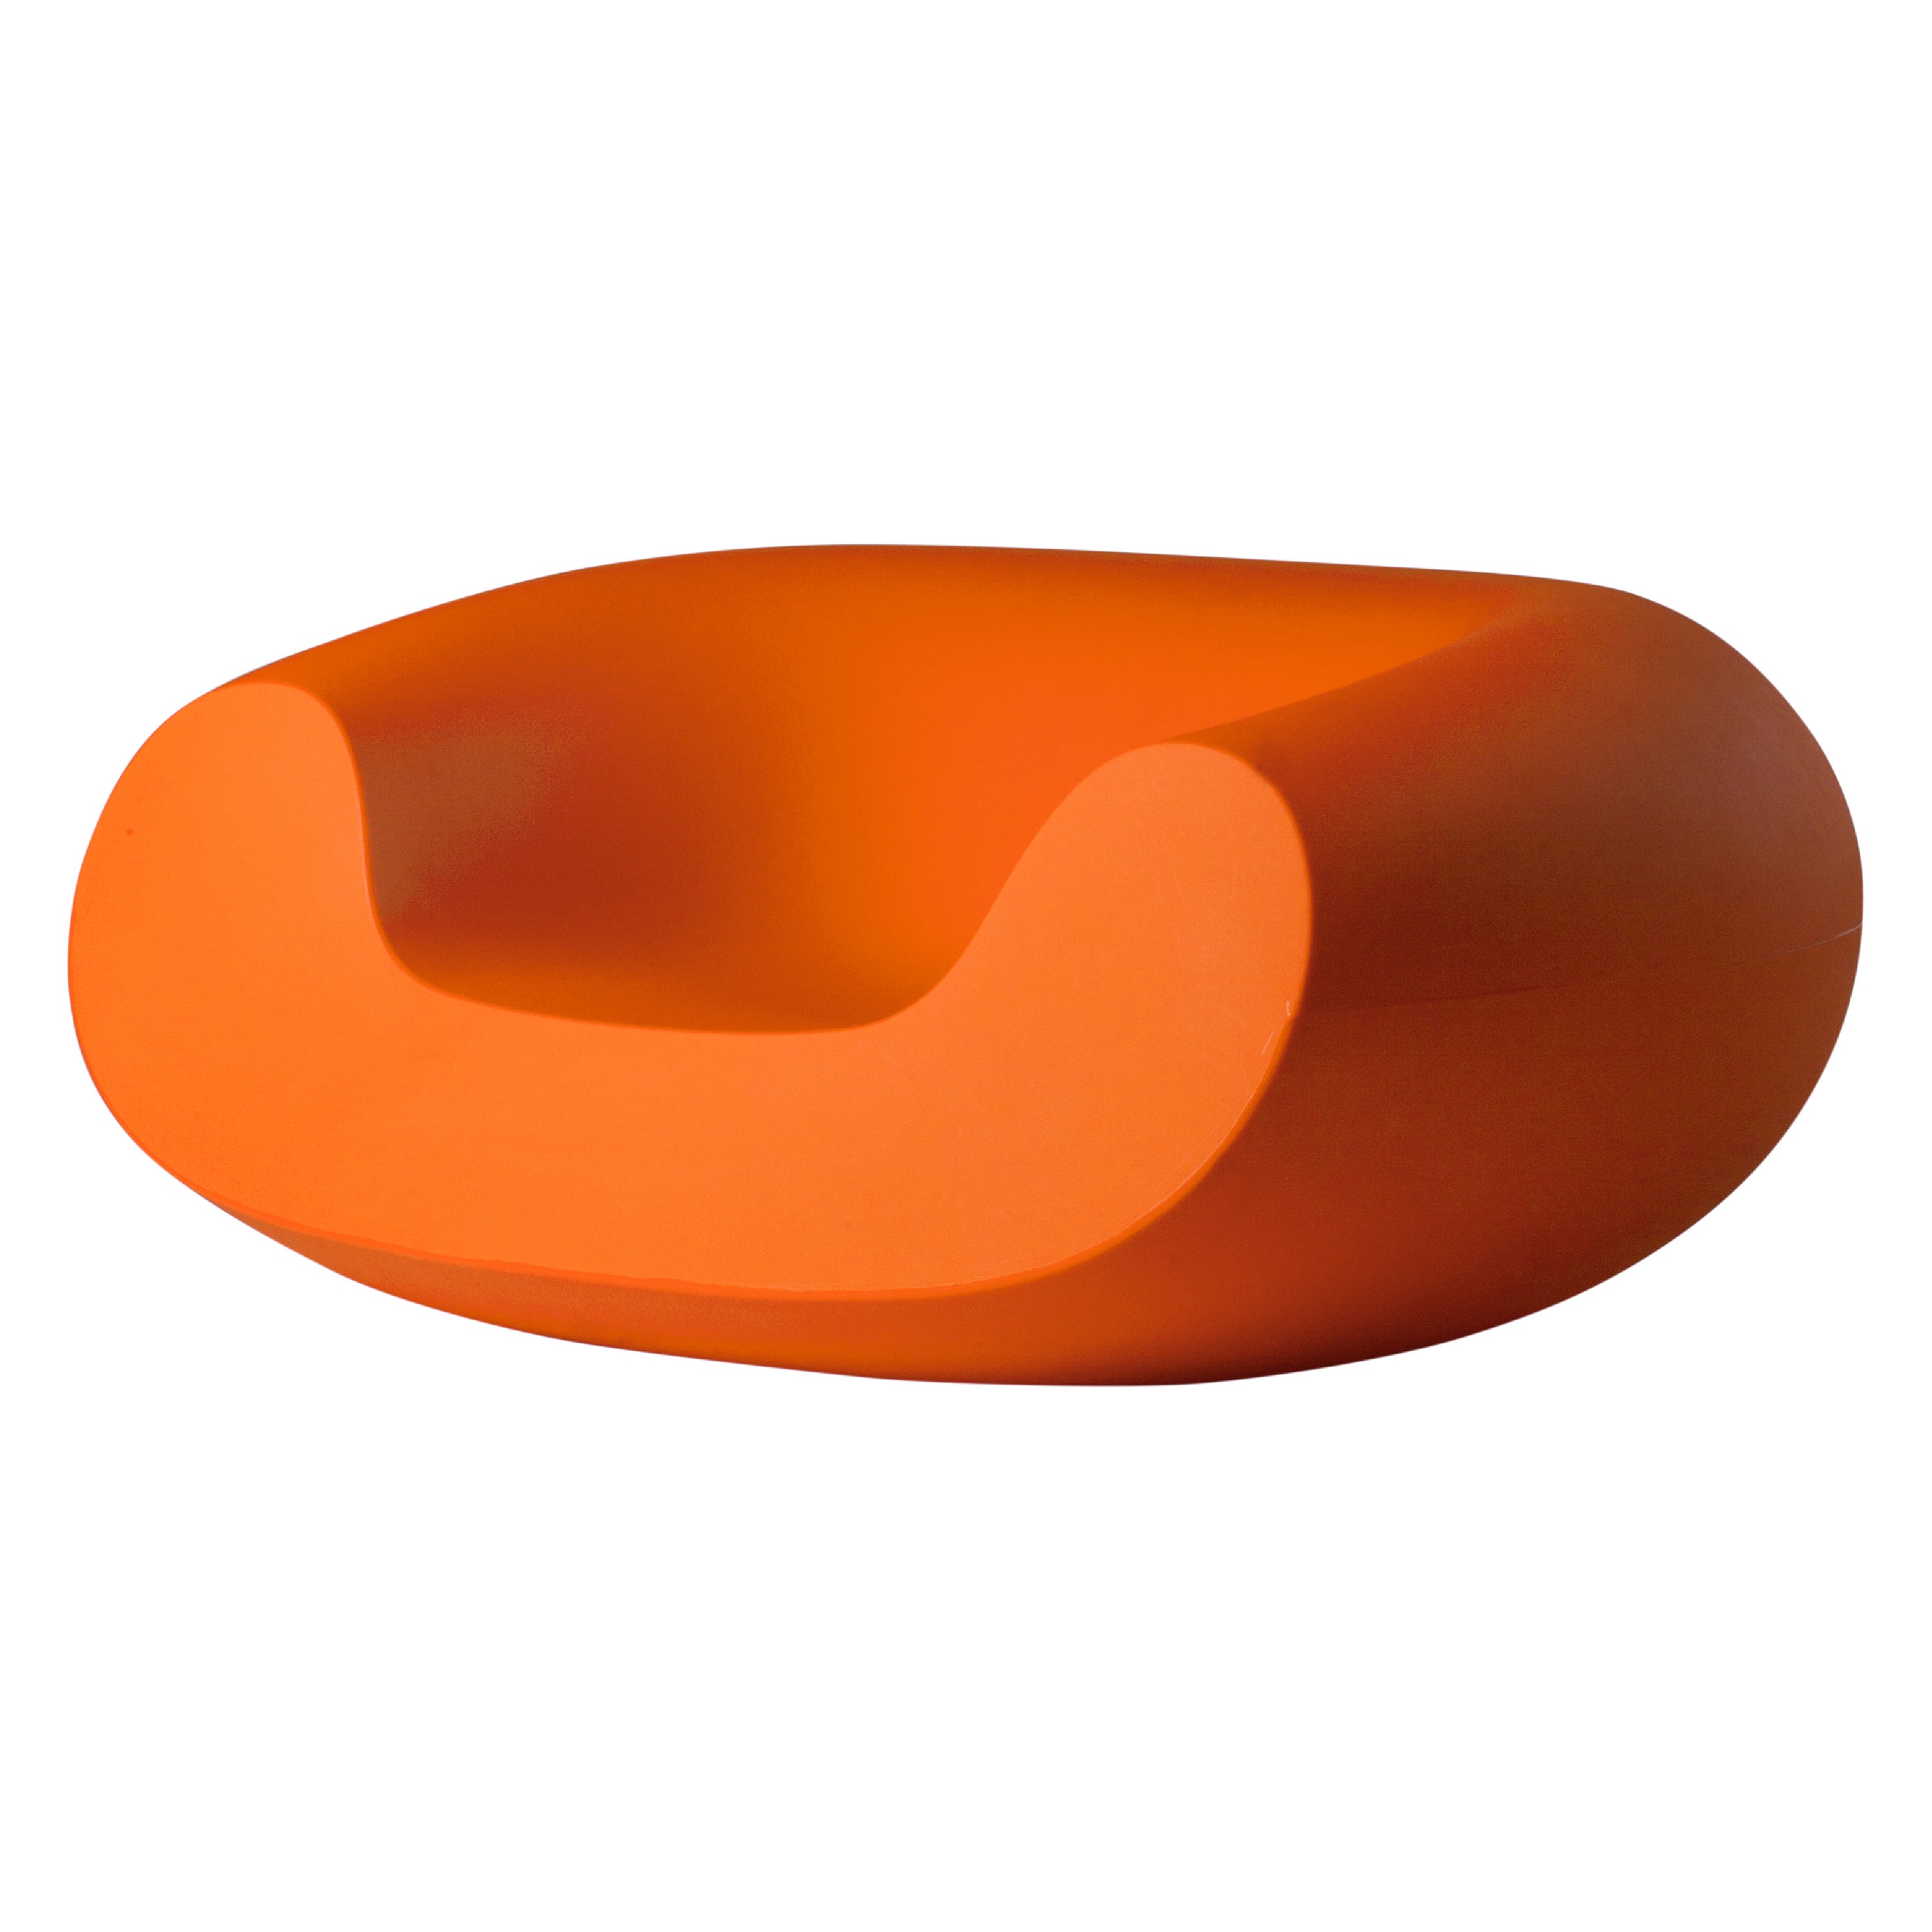 Fauteuil de salon Chubby Design Slide Design en peau de mouton orange par Marcel Wanders